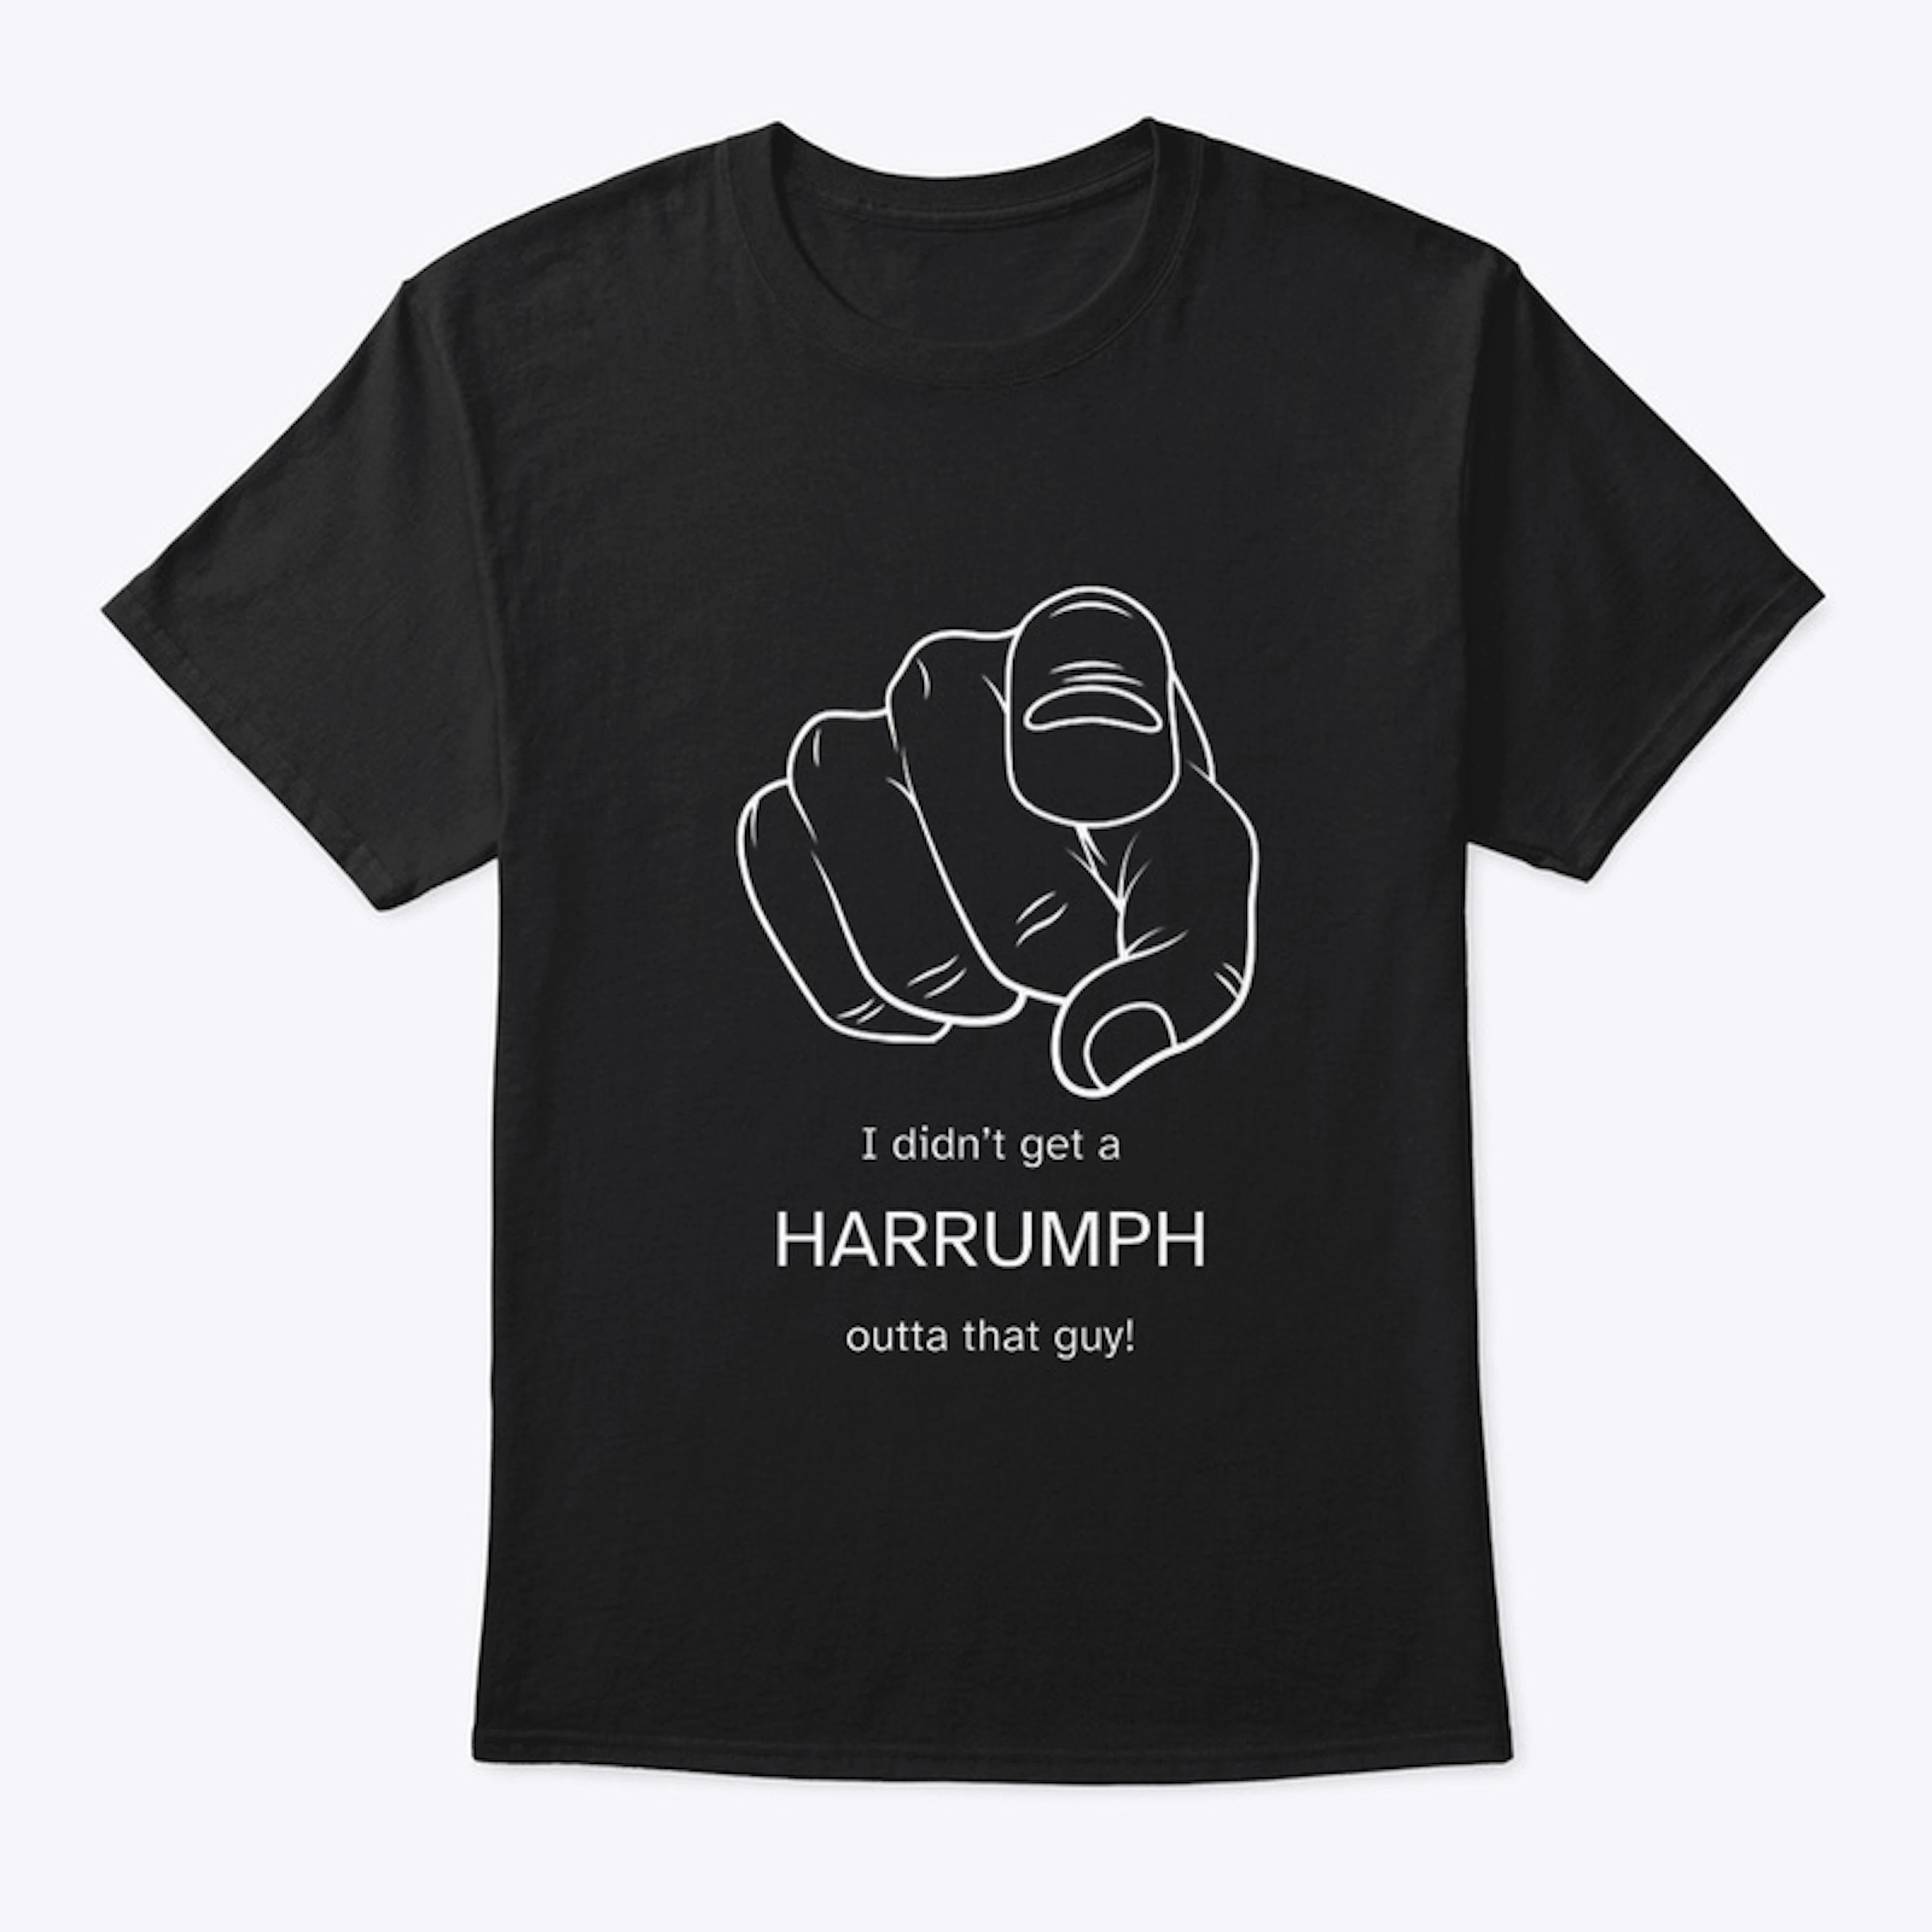 HARRUMPH! HARRUMPH!